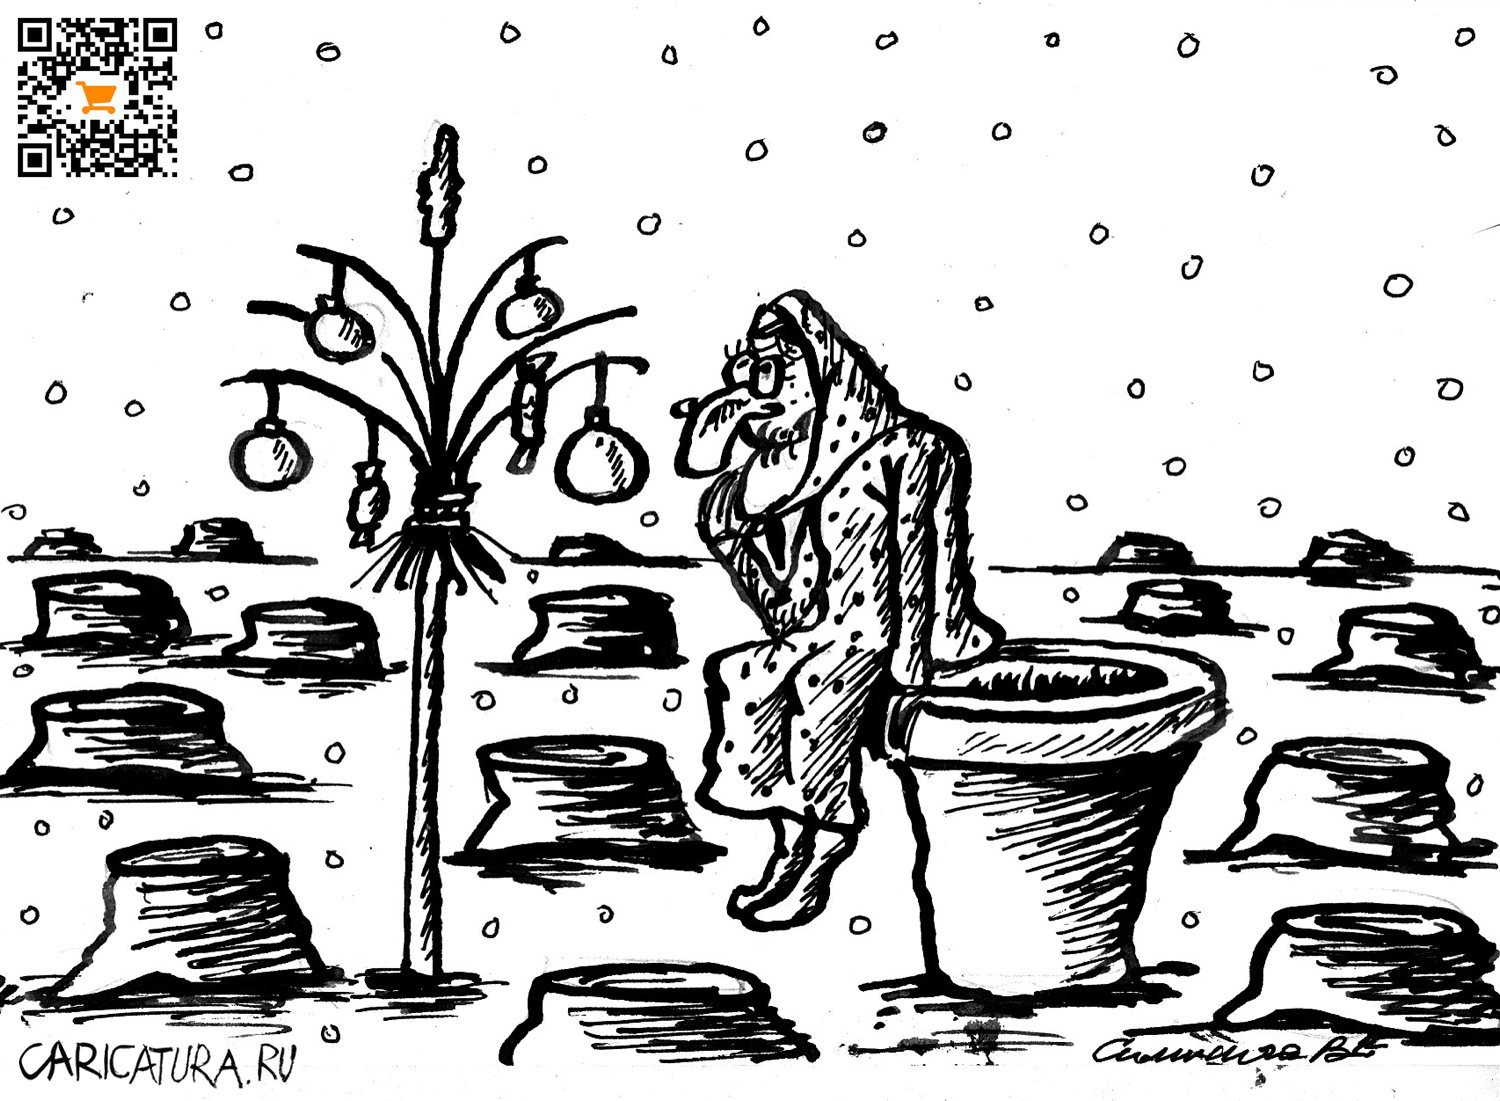 Карикатура "Праздник", Vadim Siminoga